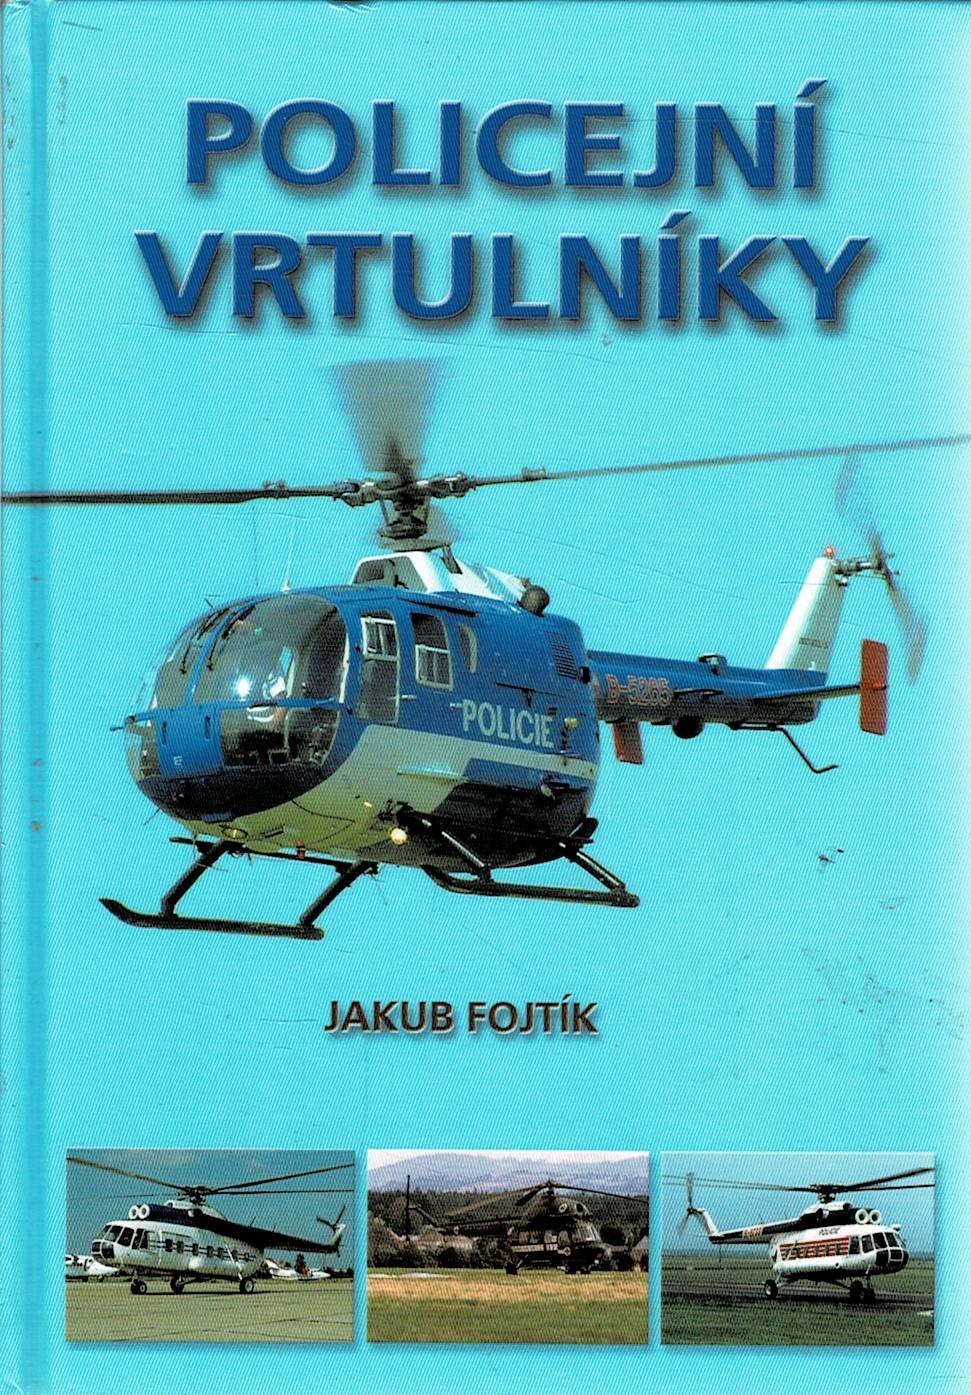 Fojtík, Jakub: Policejní vrtulníky